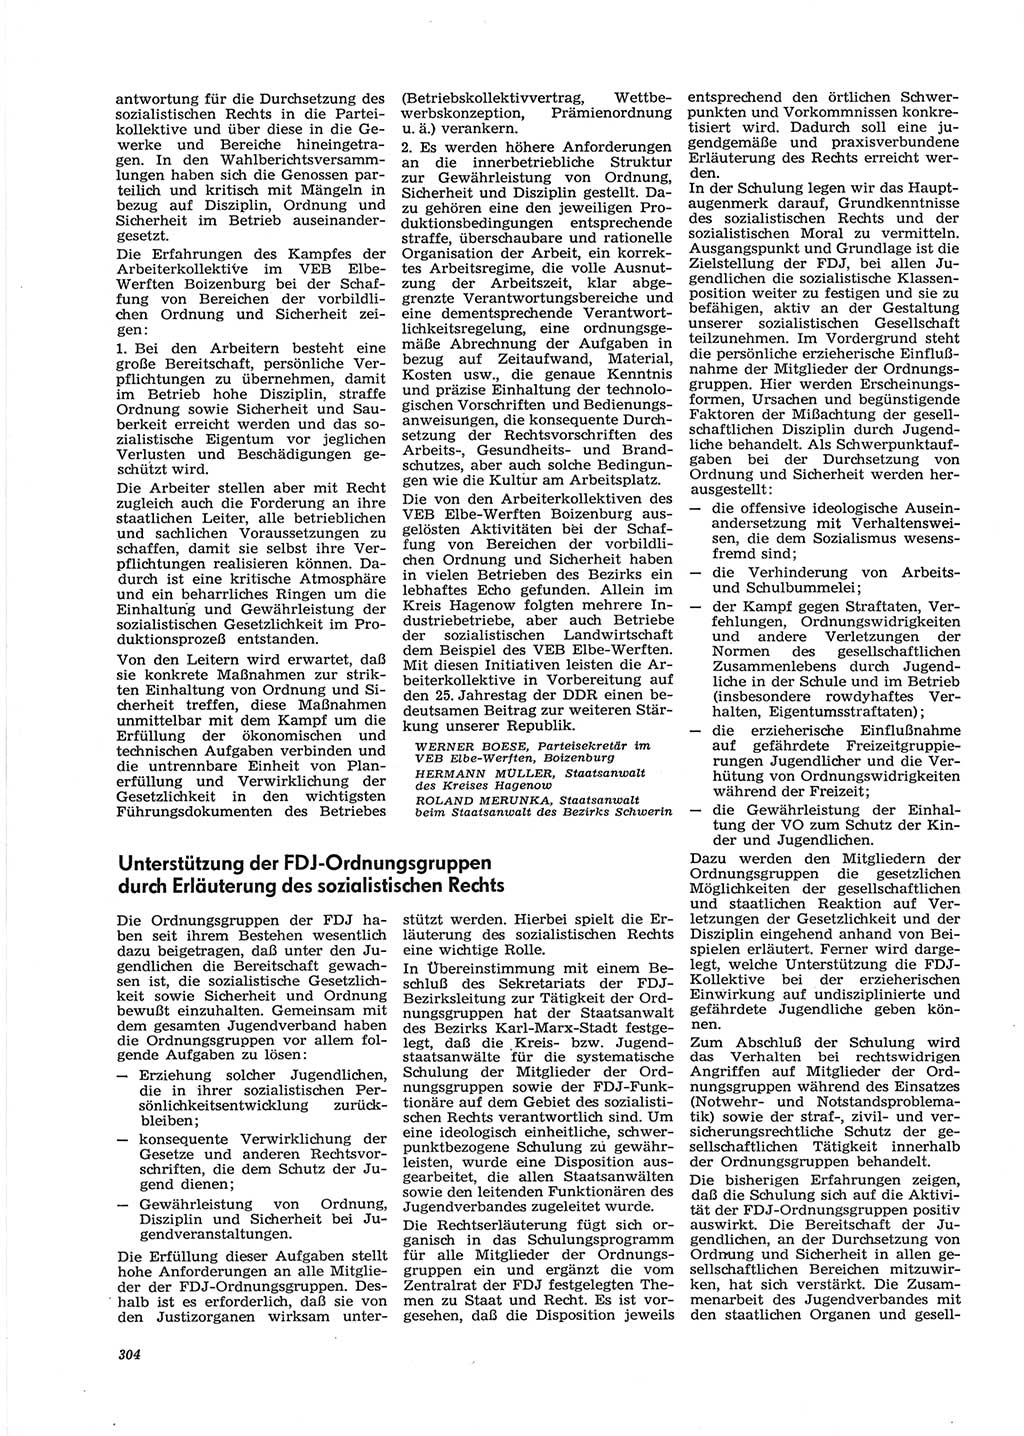 Neue Justiz (NJ), Zeitschrift für Recht und Rechtswissenschaft [Deutsche Demokratische Republik (DDR)], 28. Jahrgang 1974, Seite 304 (NJ DDR 1974, S. 304)